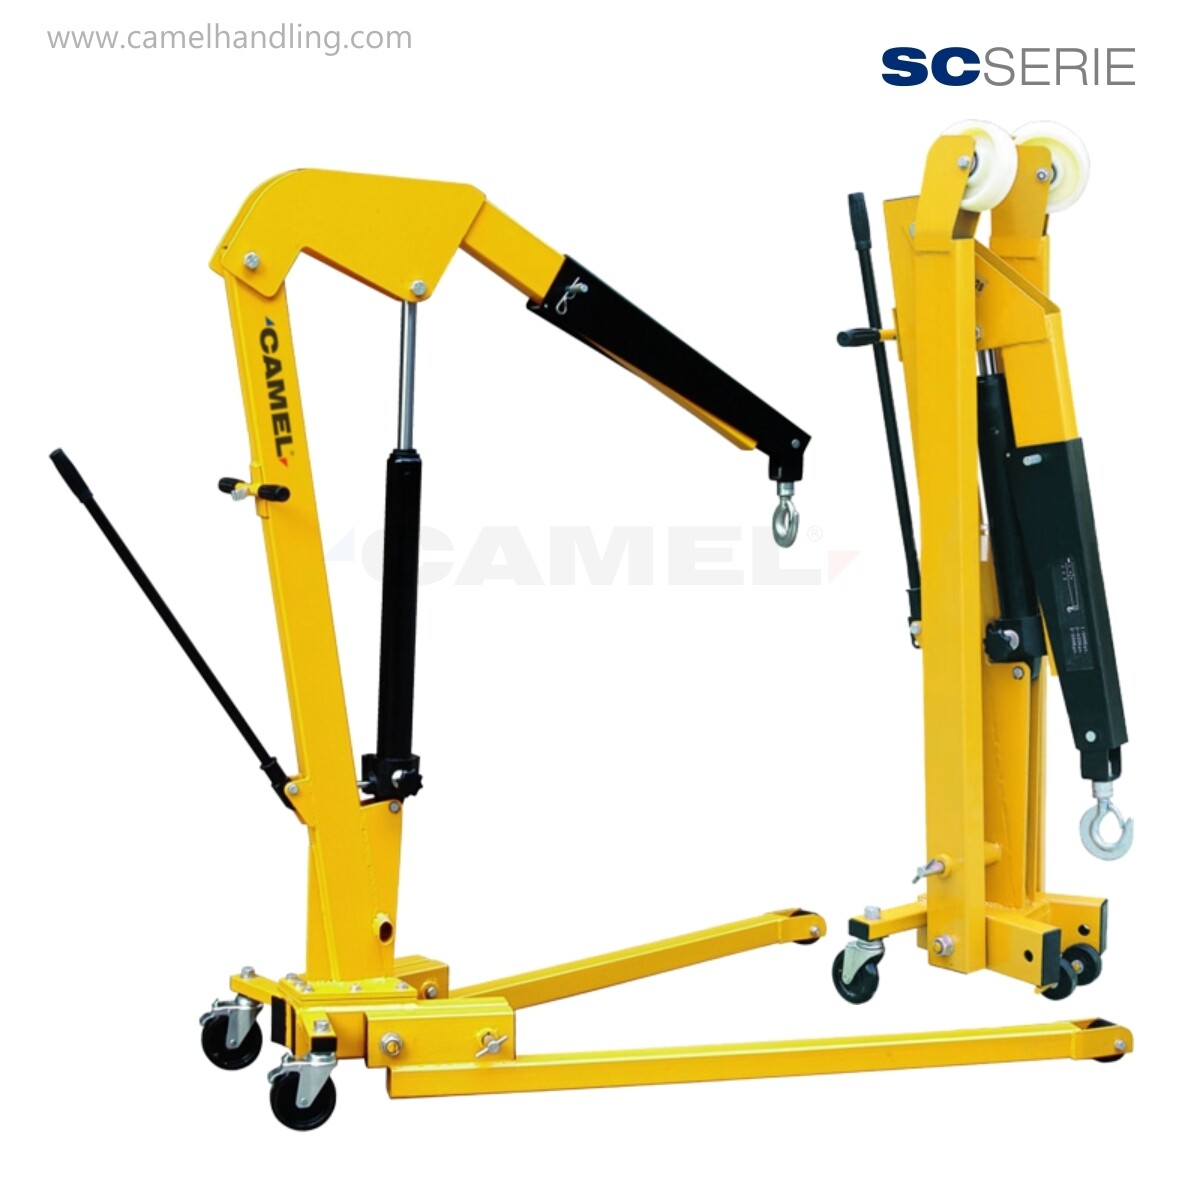 Foldable Shop Crane SC1000A